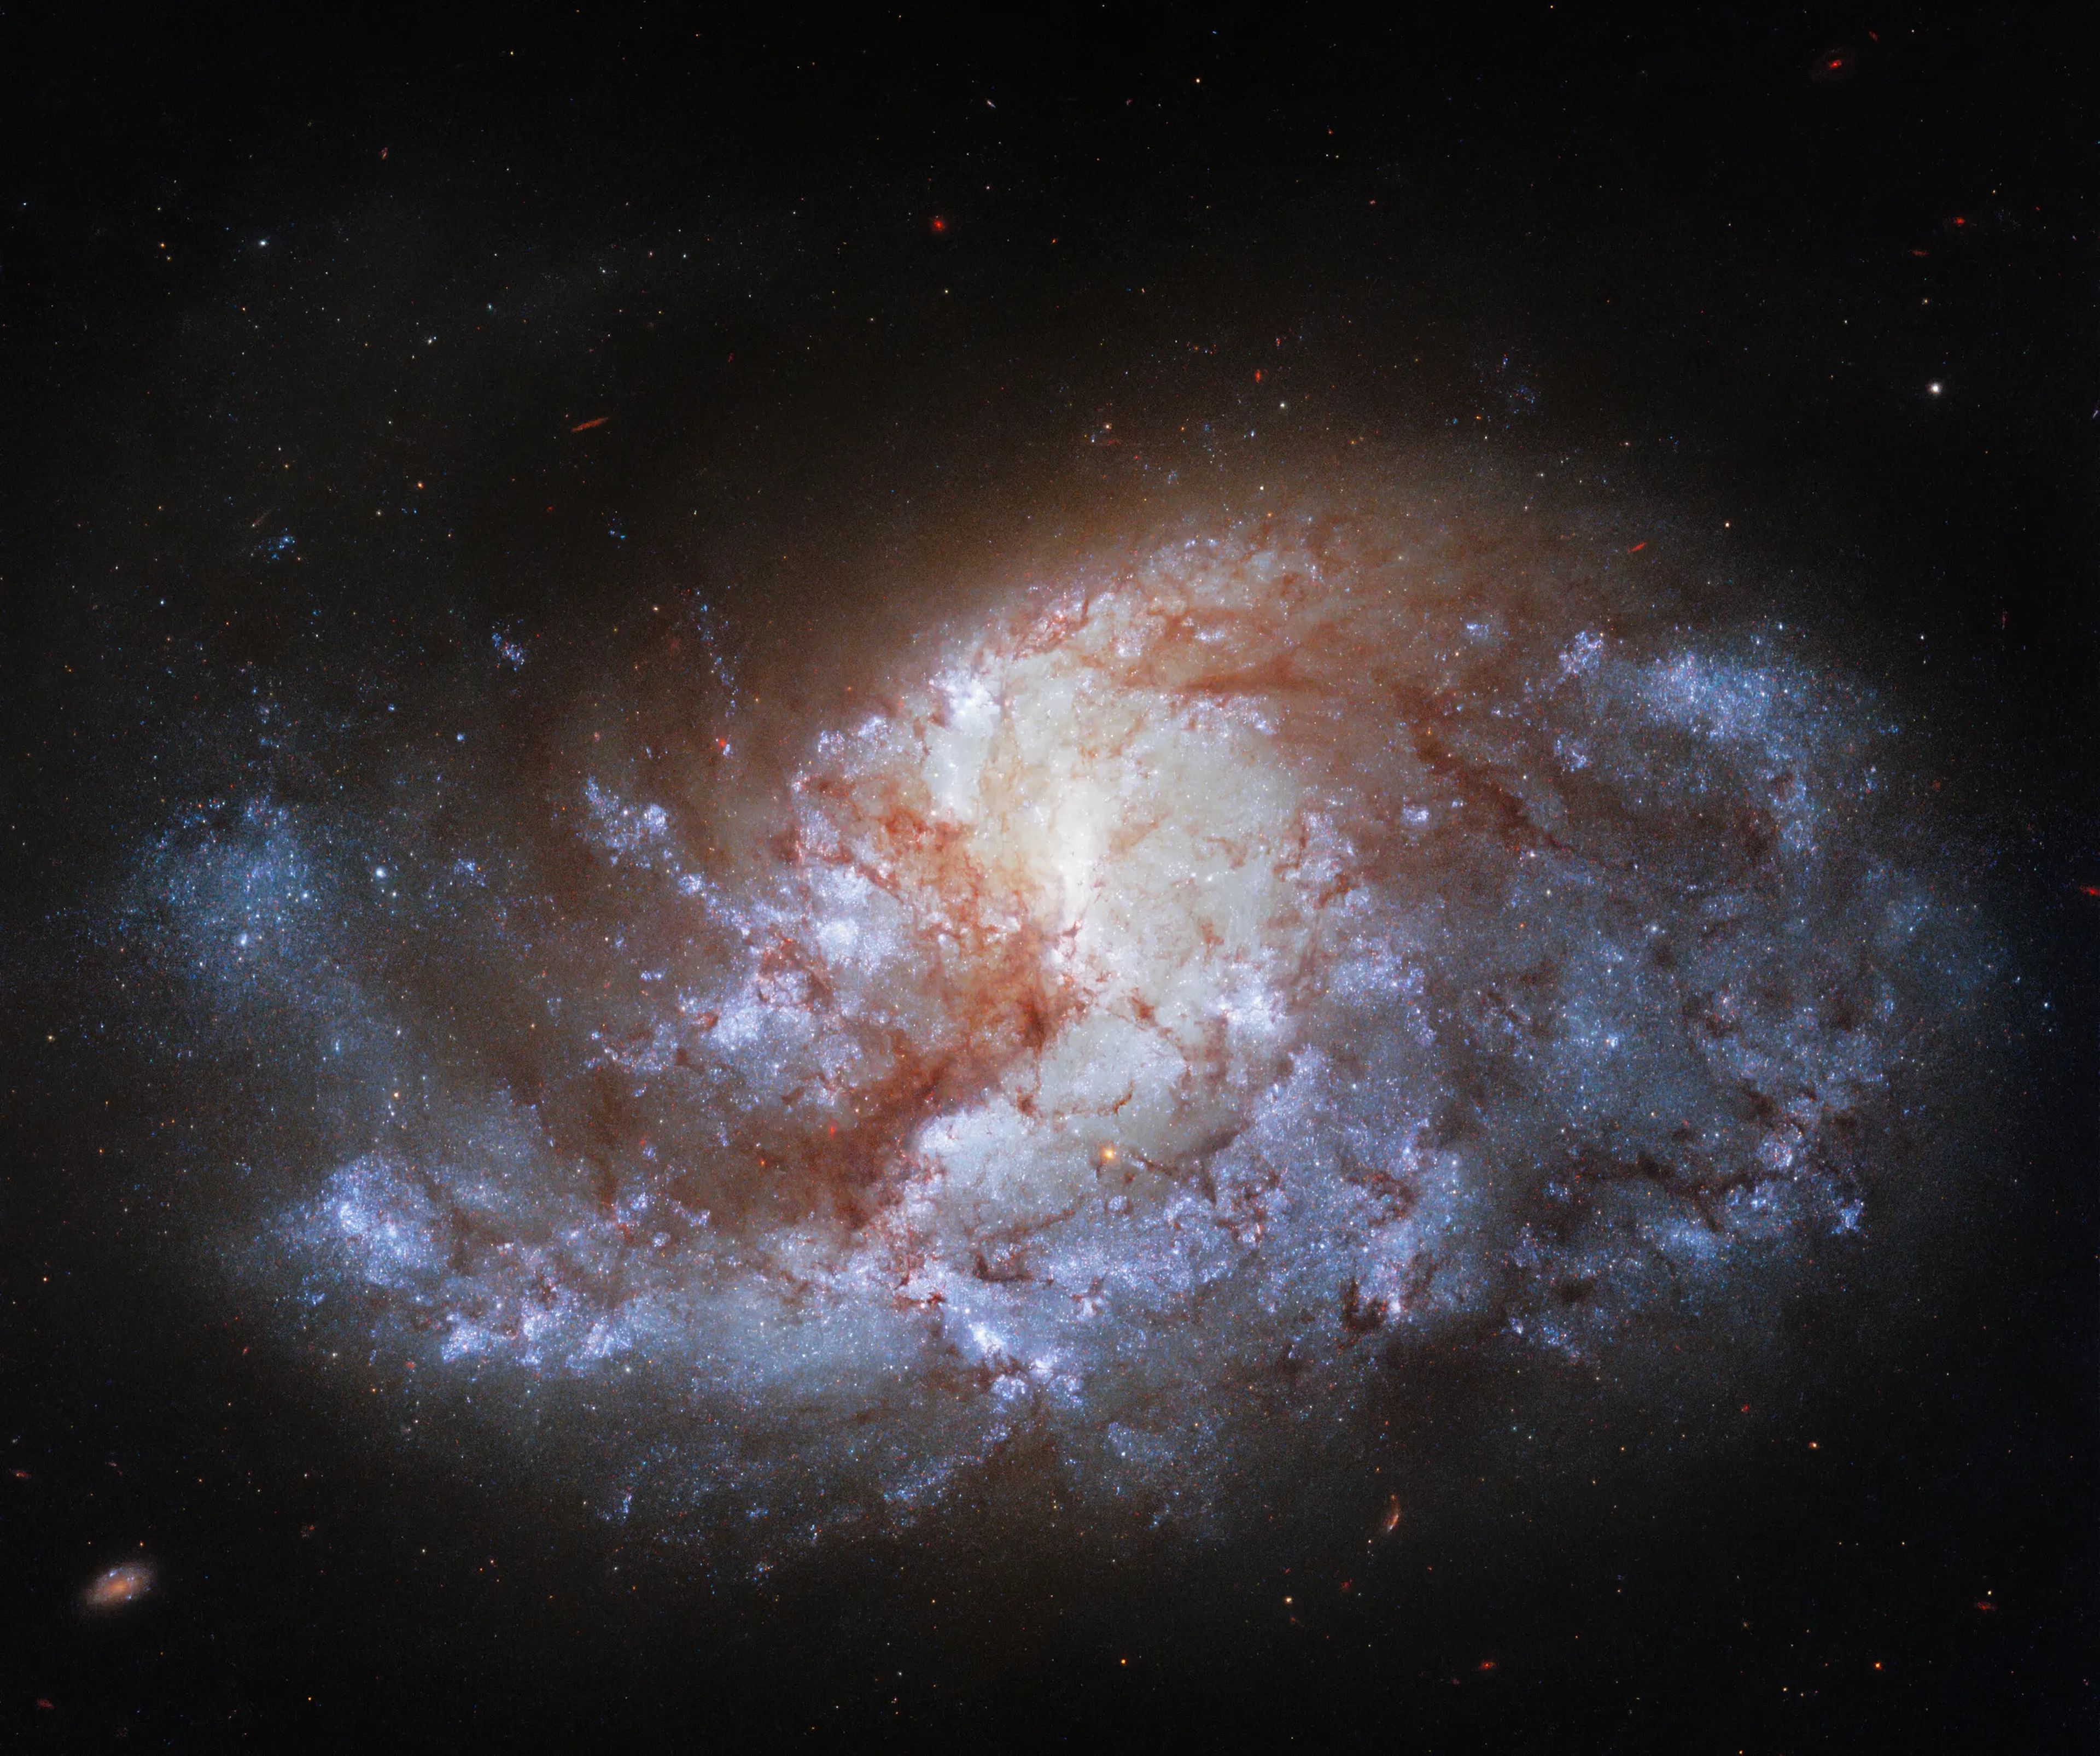 La galaxia se conoce como NGC 1385.